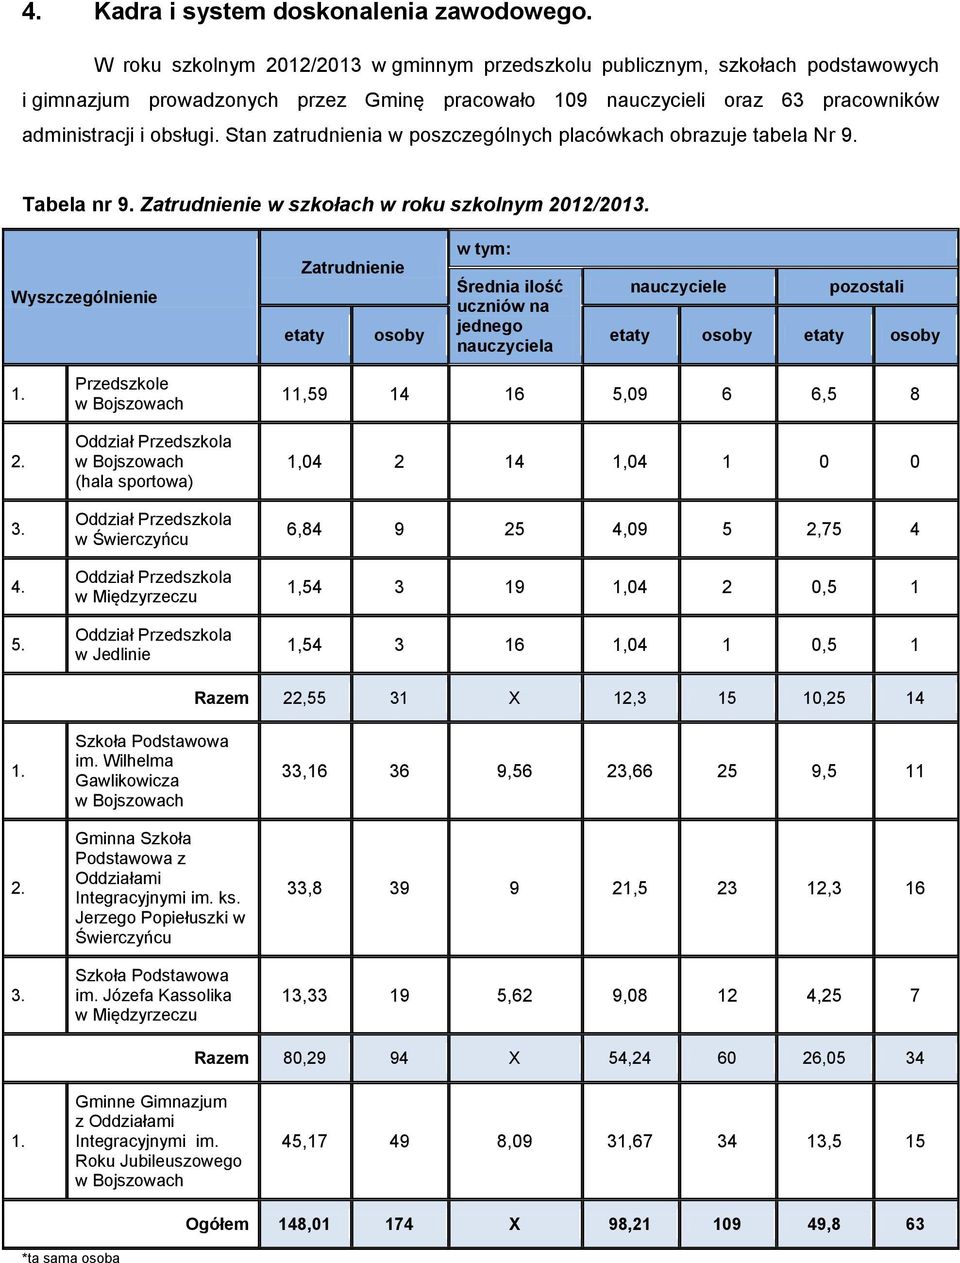 Stan zatrudnienia w poszczególnych placówkach obrazuje tabela Nr 9. Tabela nr 9. Zatrudnienie w szkołach w roku szkolnym 2012/2013.